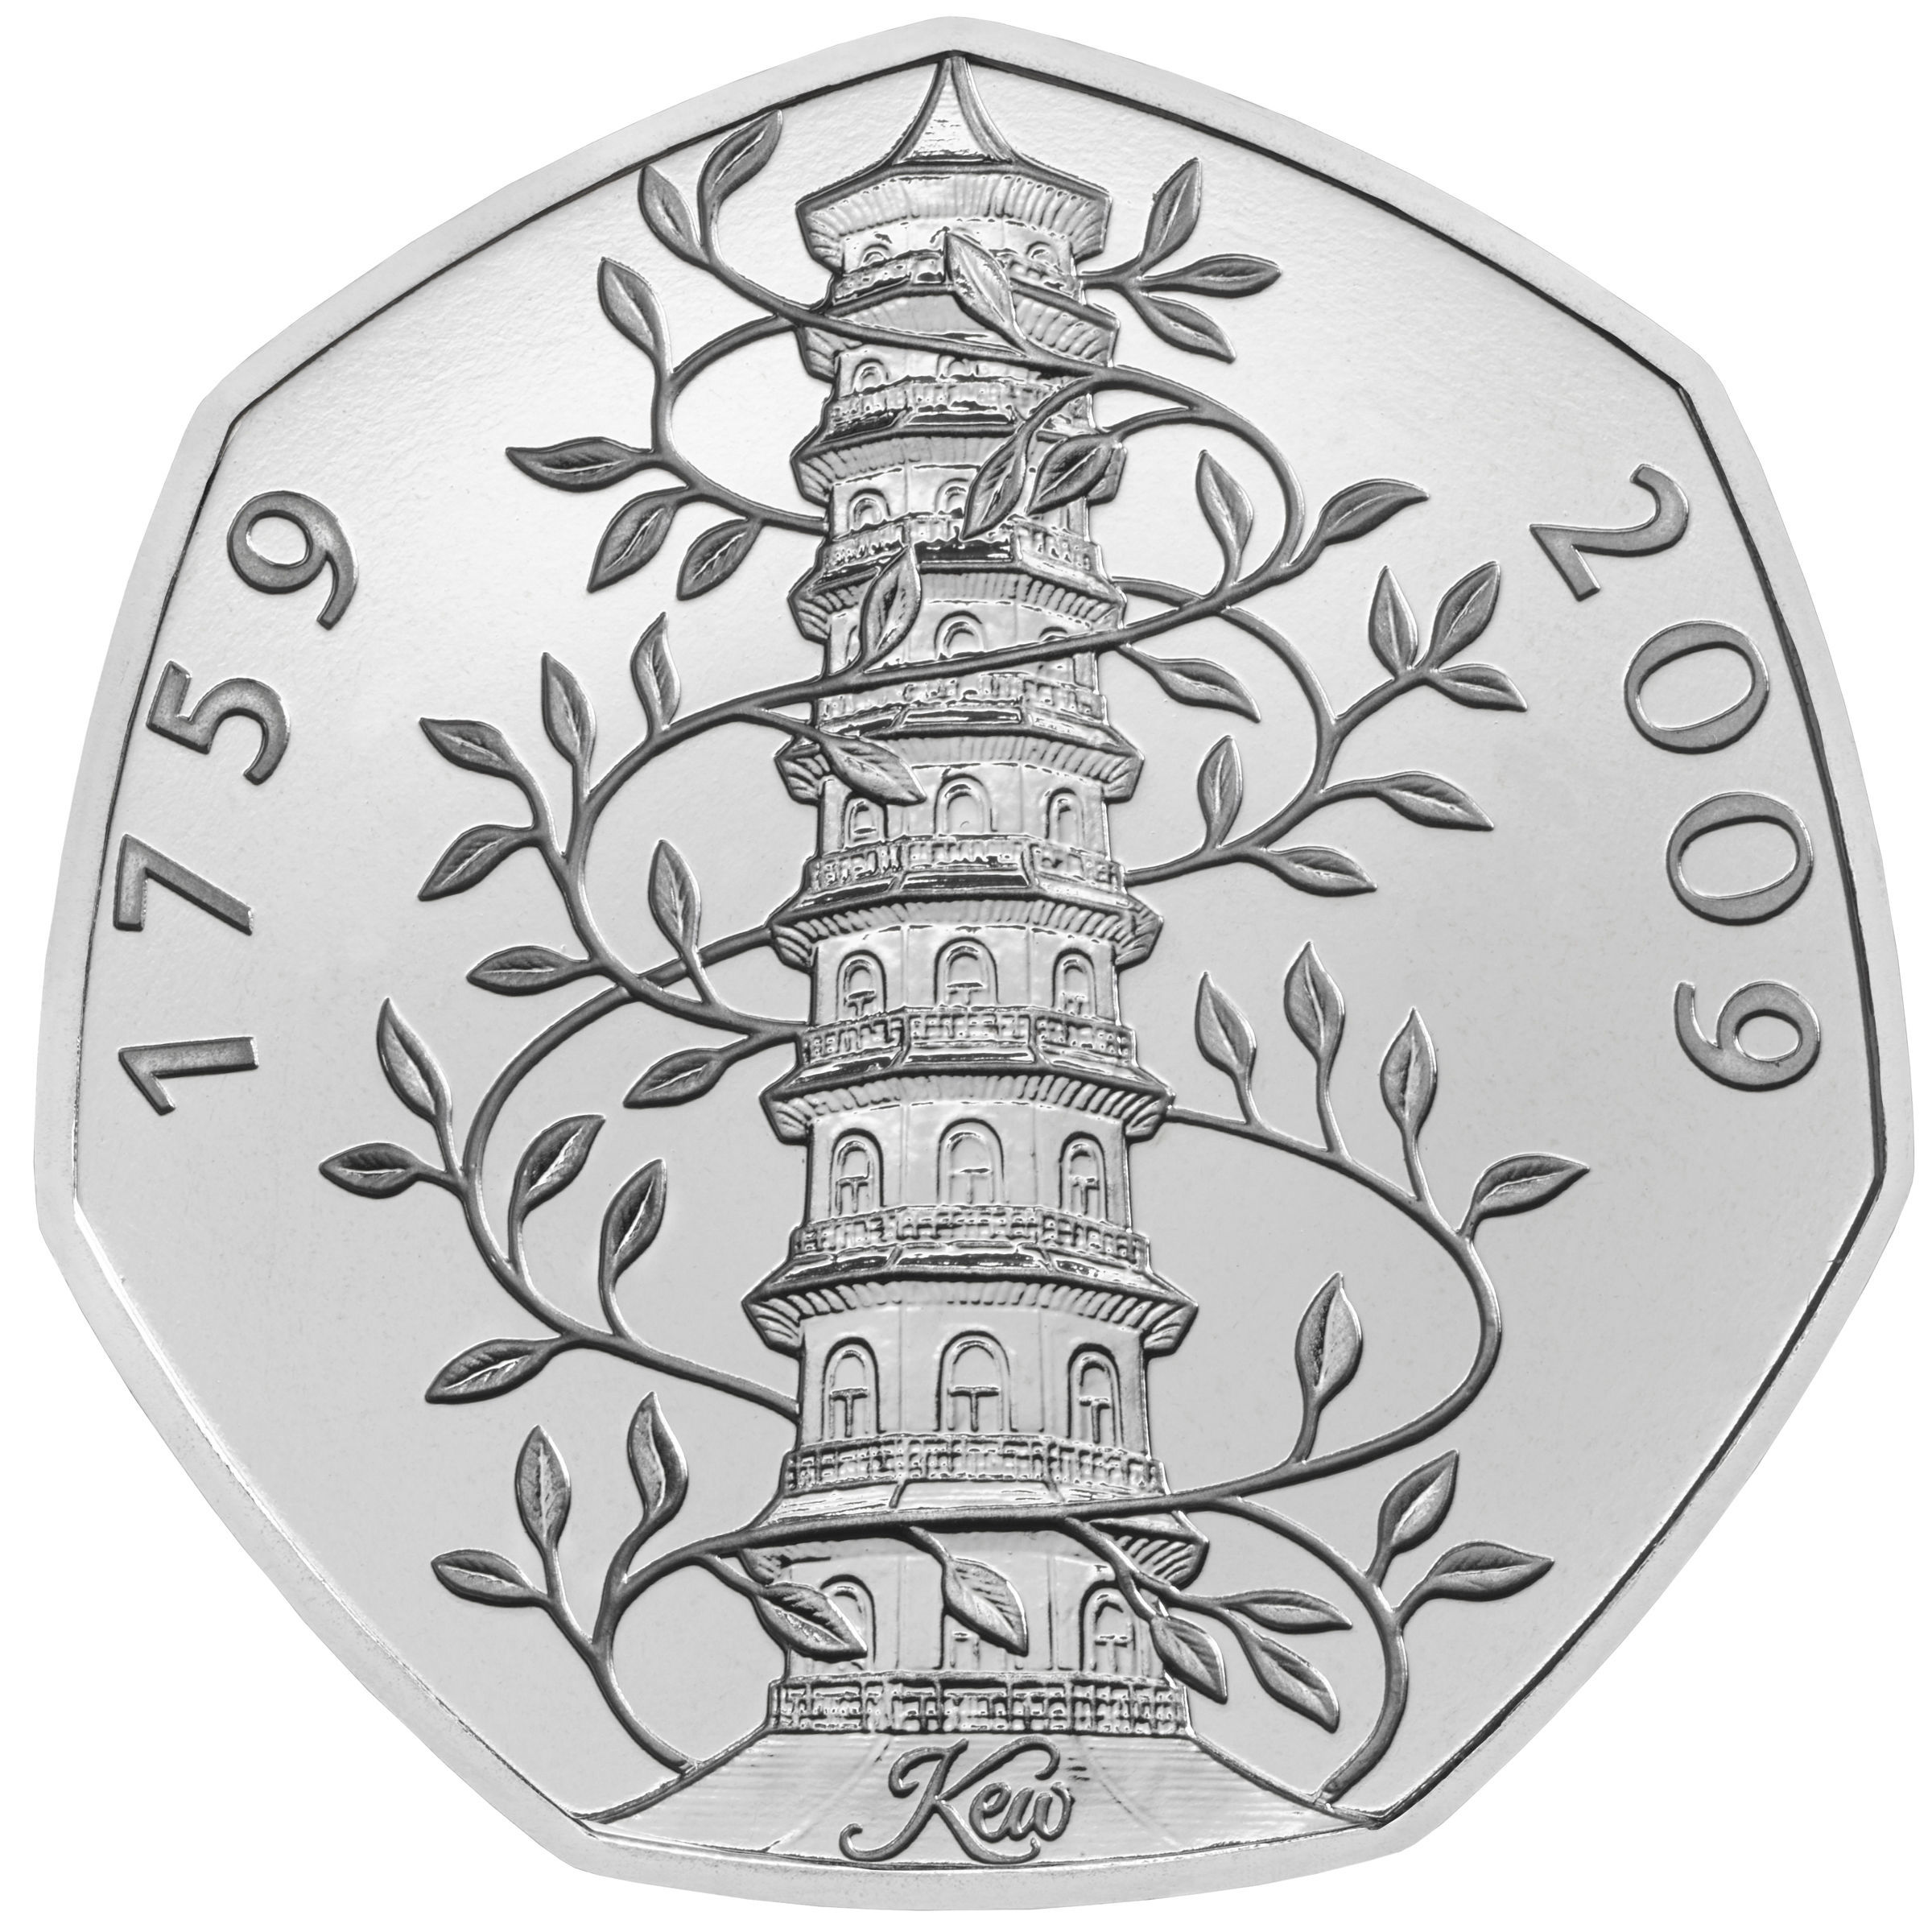 Der Kew Gardens 50p ist die wertvollste aller Münzen auf dem Tracker